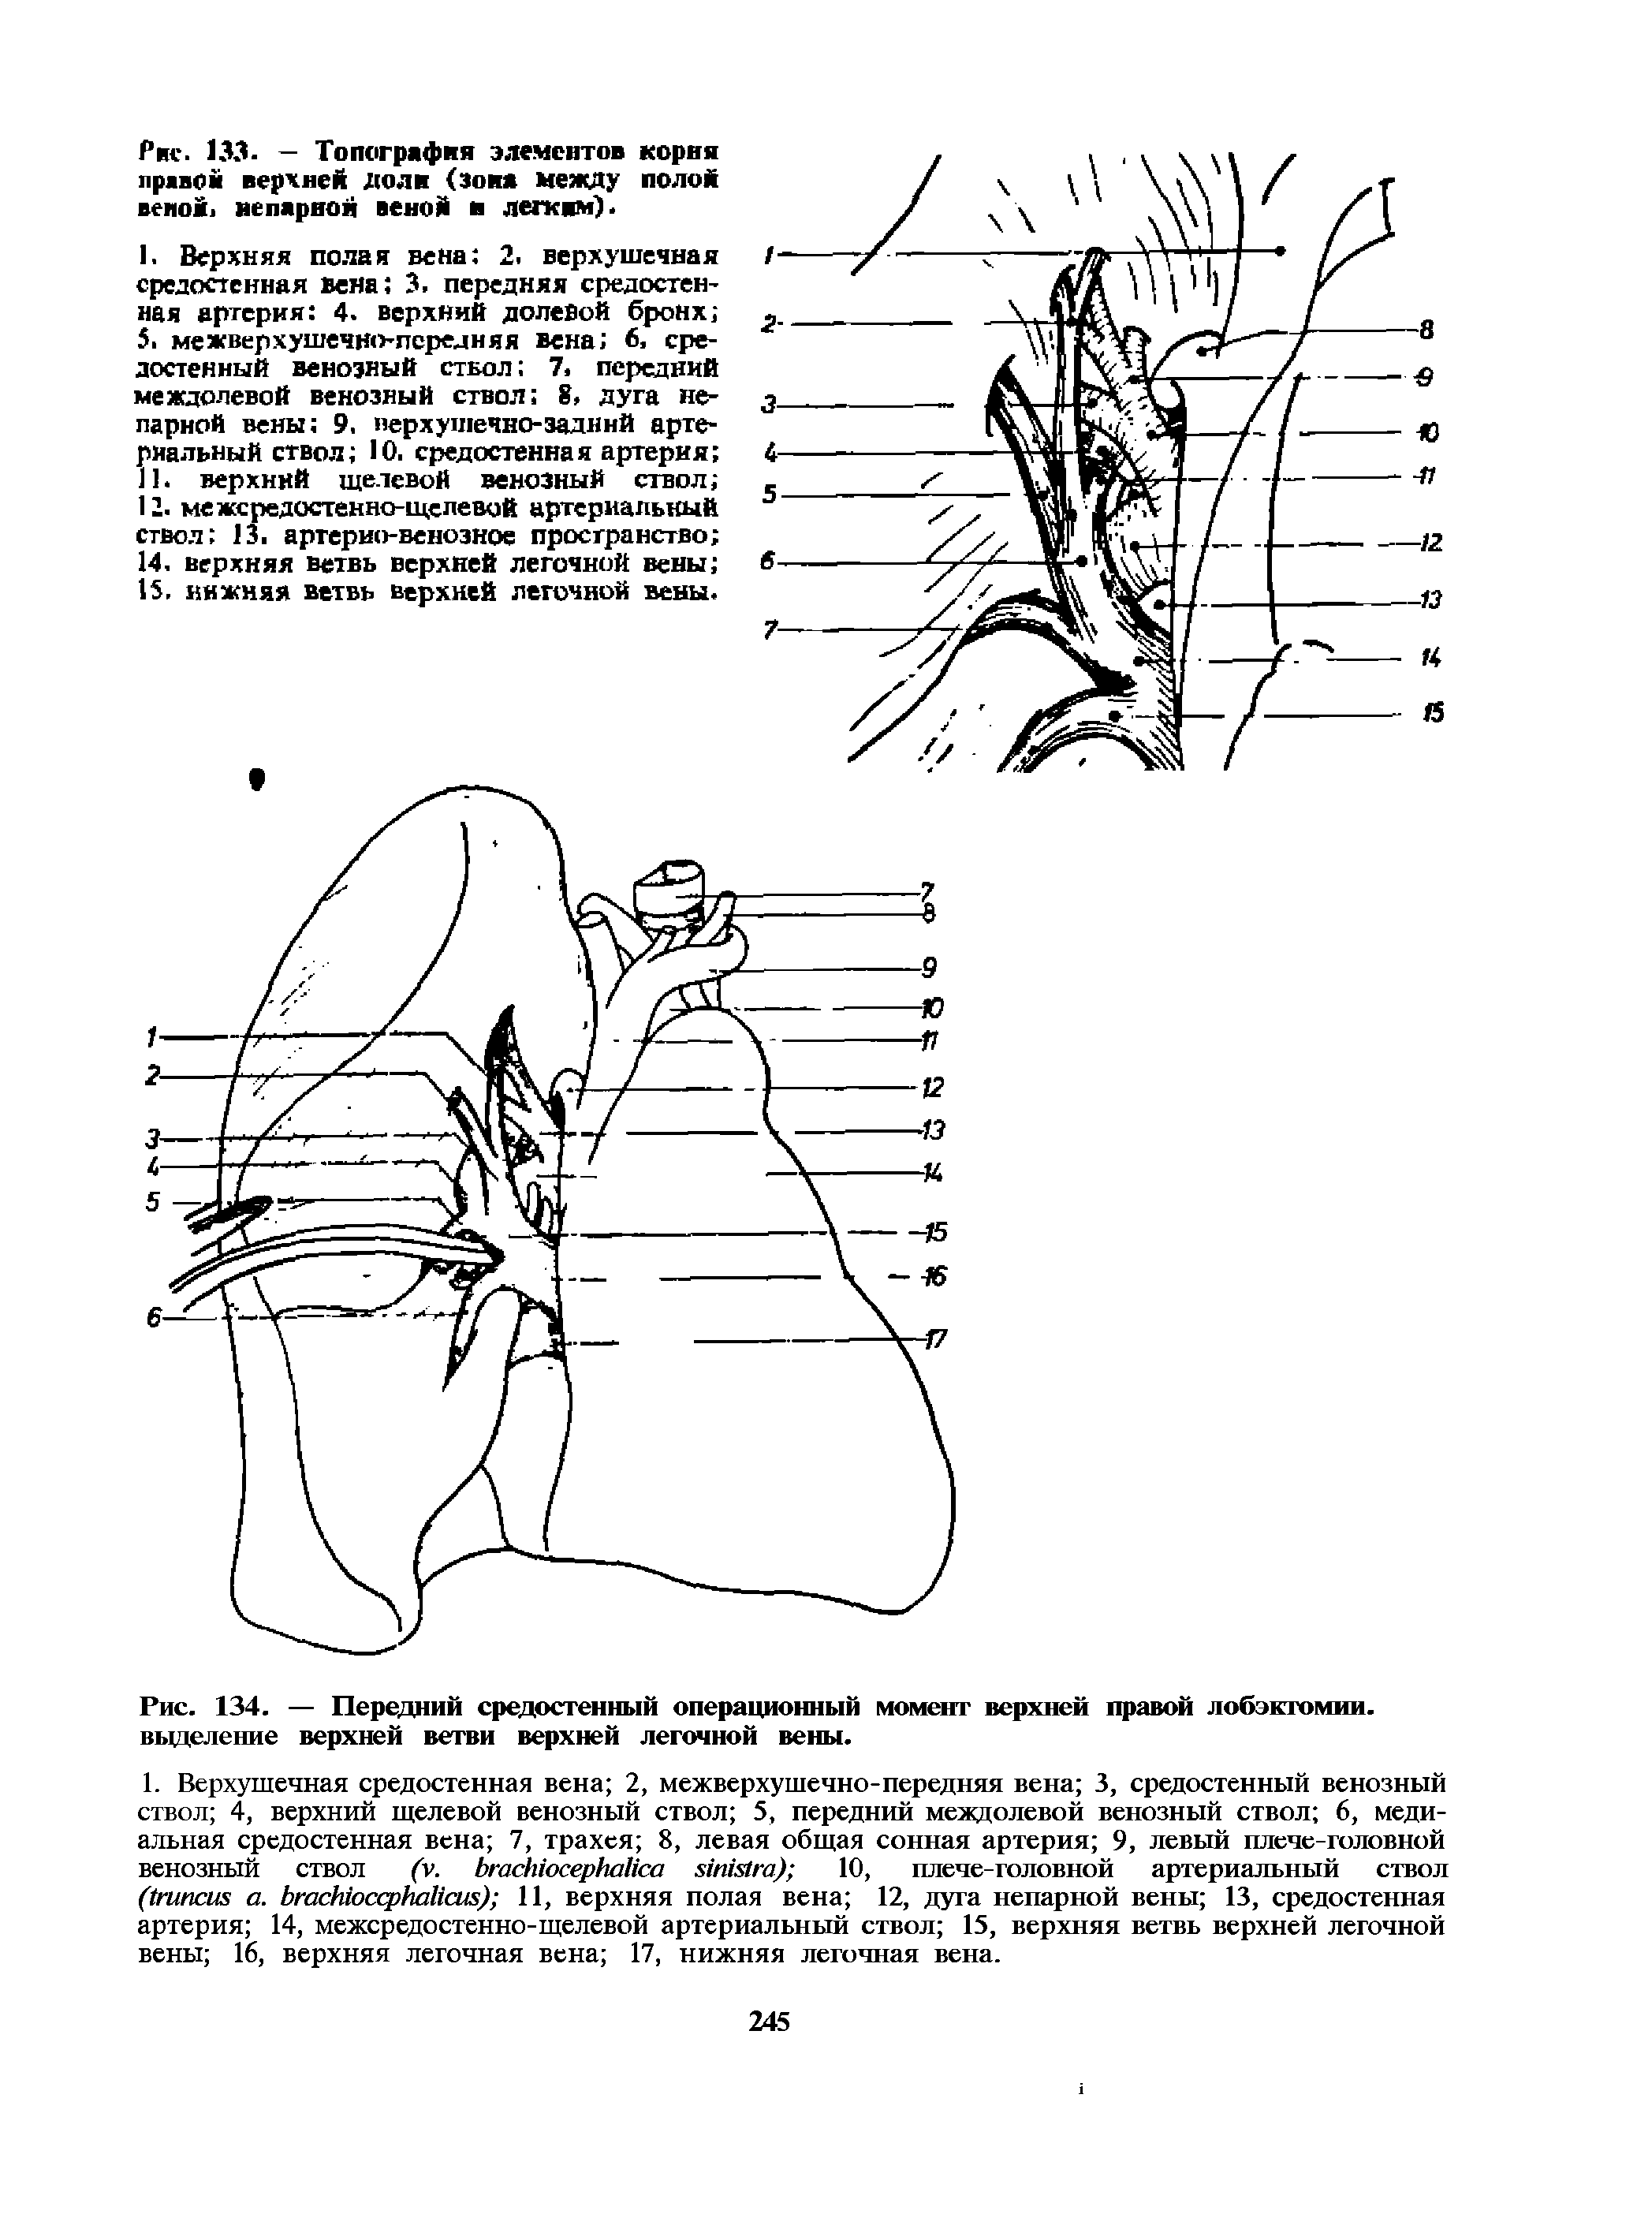 Рис. 134. — Передний средостенный операционный момент верхней правой лобэктомии, выделение верхней ветви верхней легочной вены.